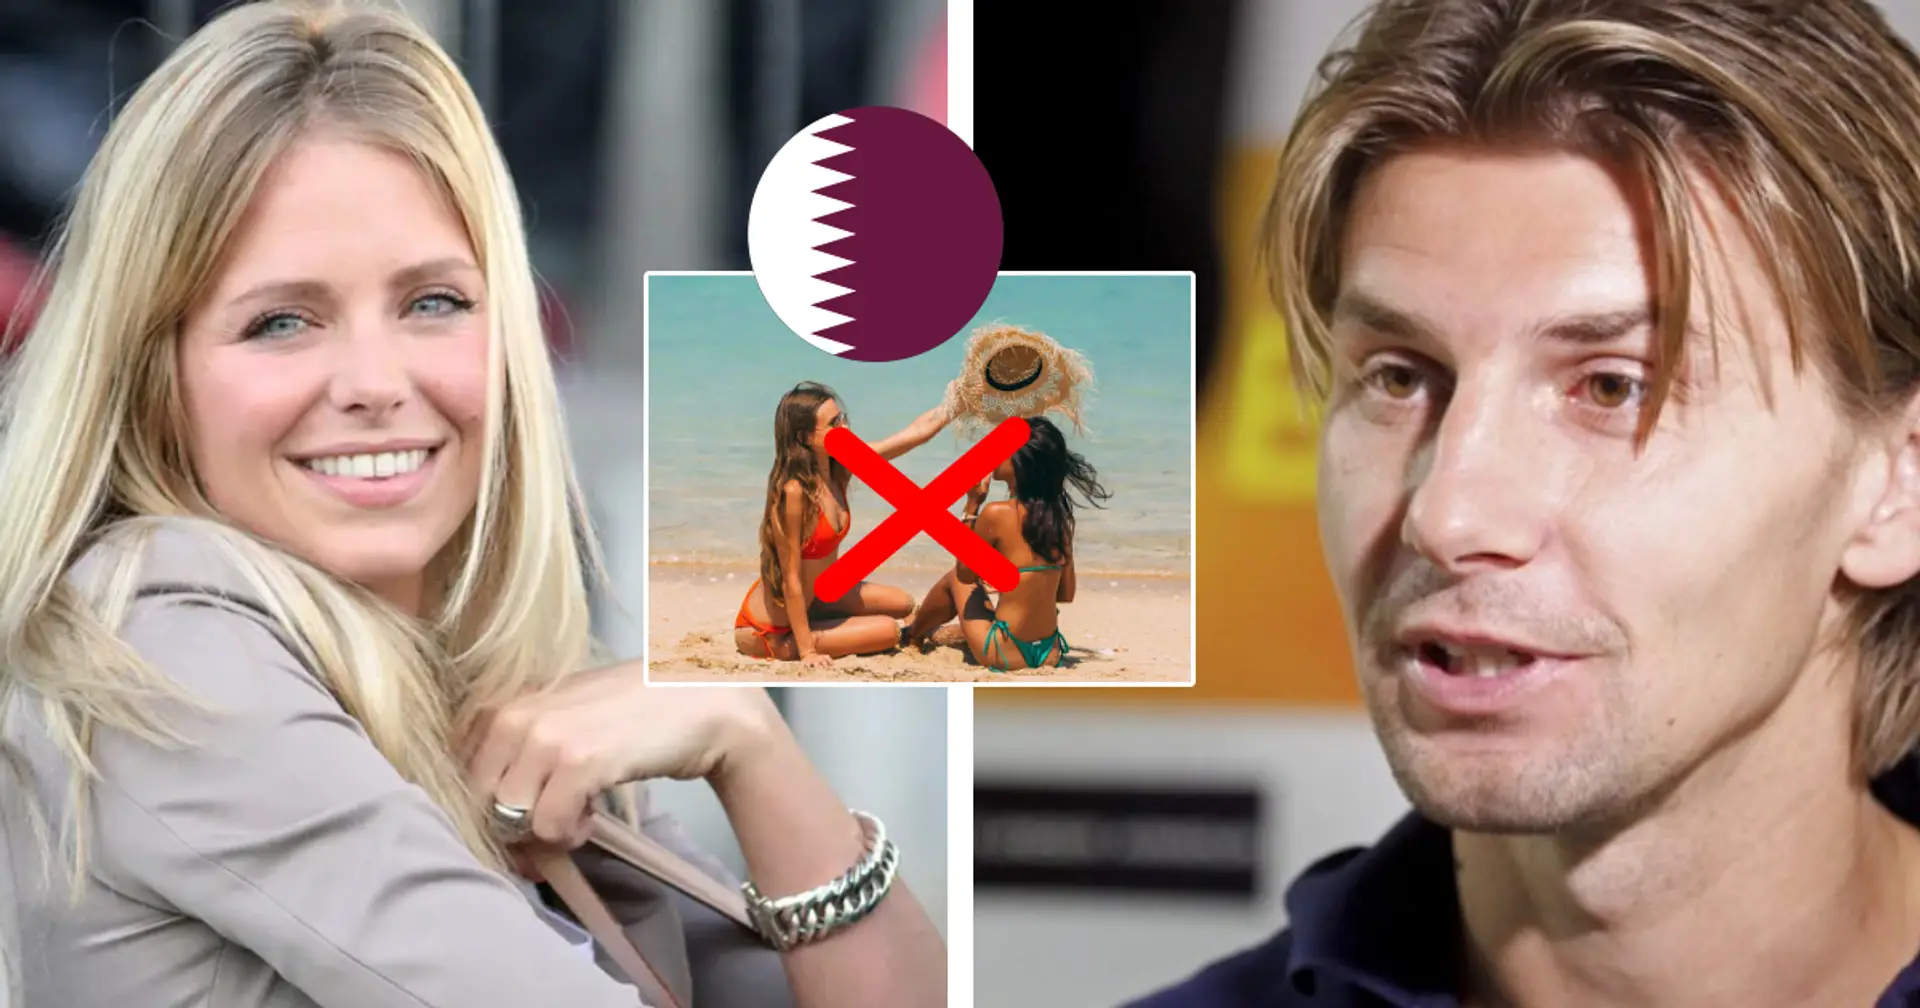 "Kein Ort, wo wir länger leben wollten": Ex-Borusse Smolarek erzählt über "Bikini-Zoff" seiner Frau in Katar